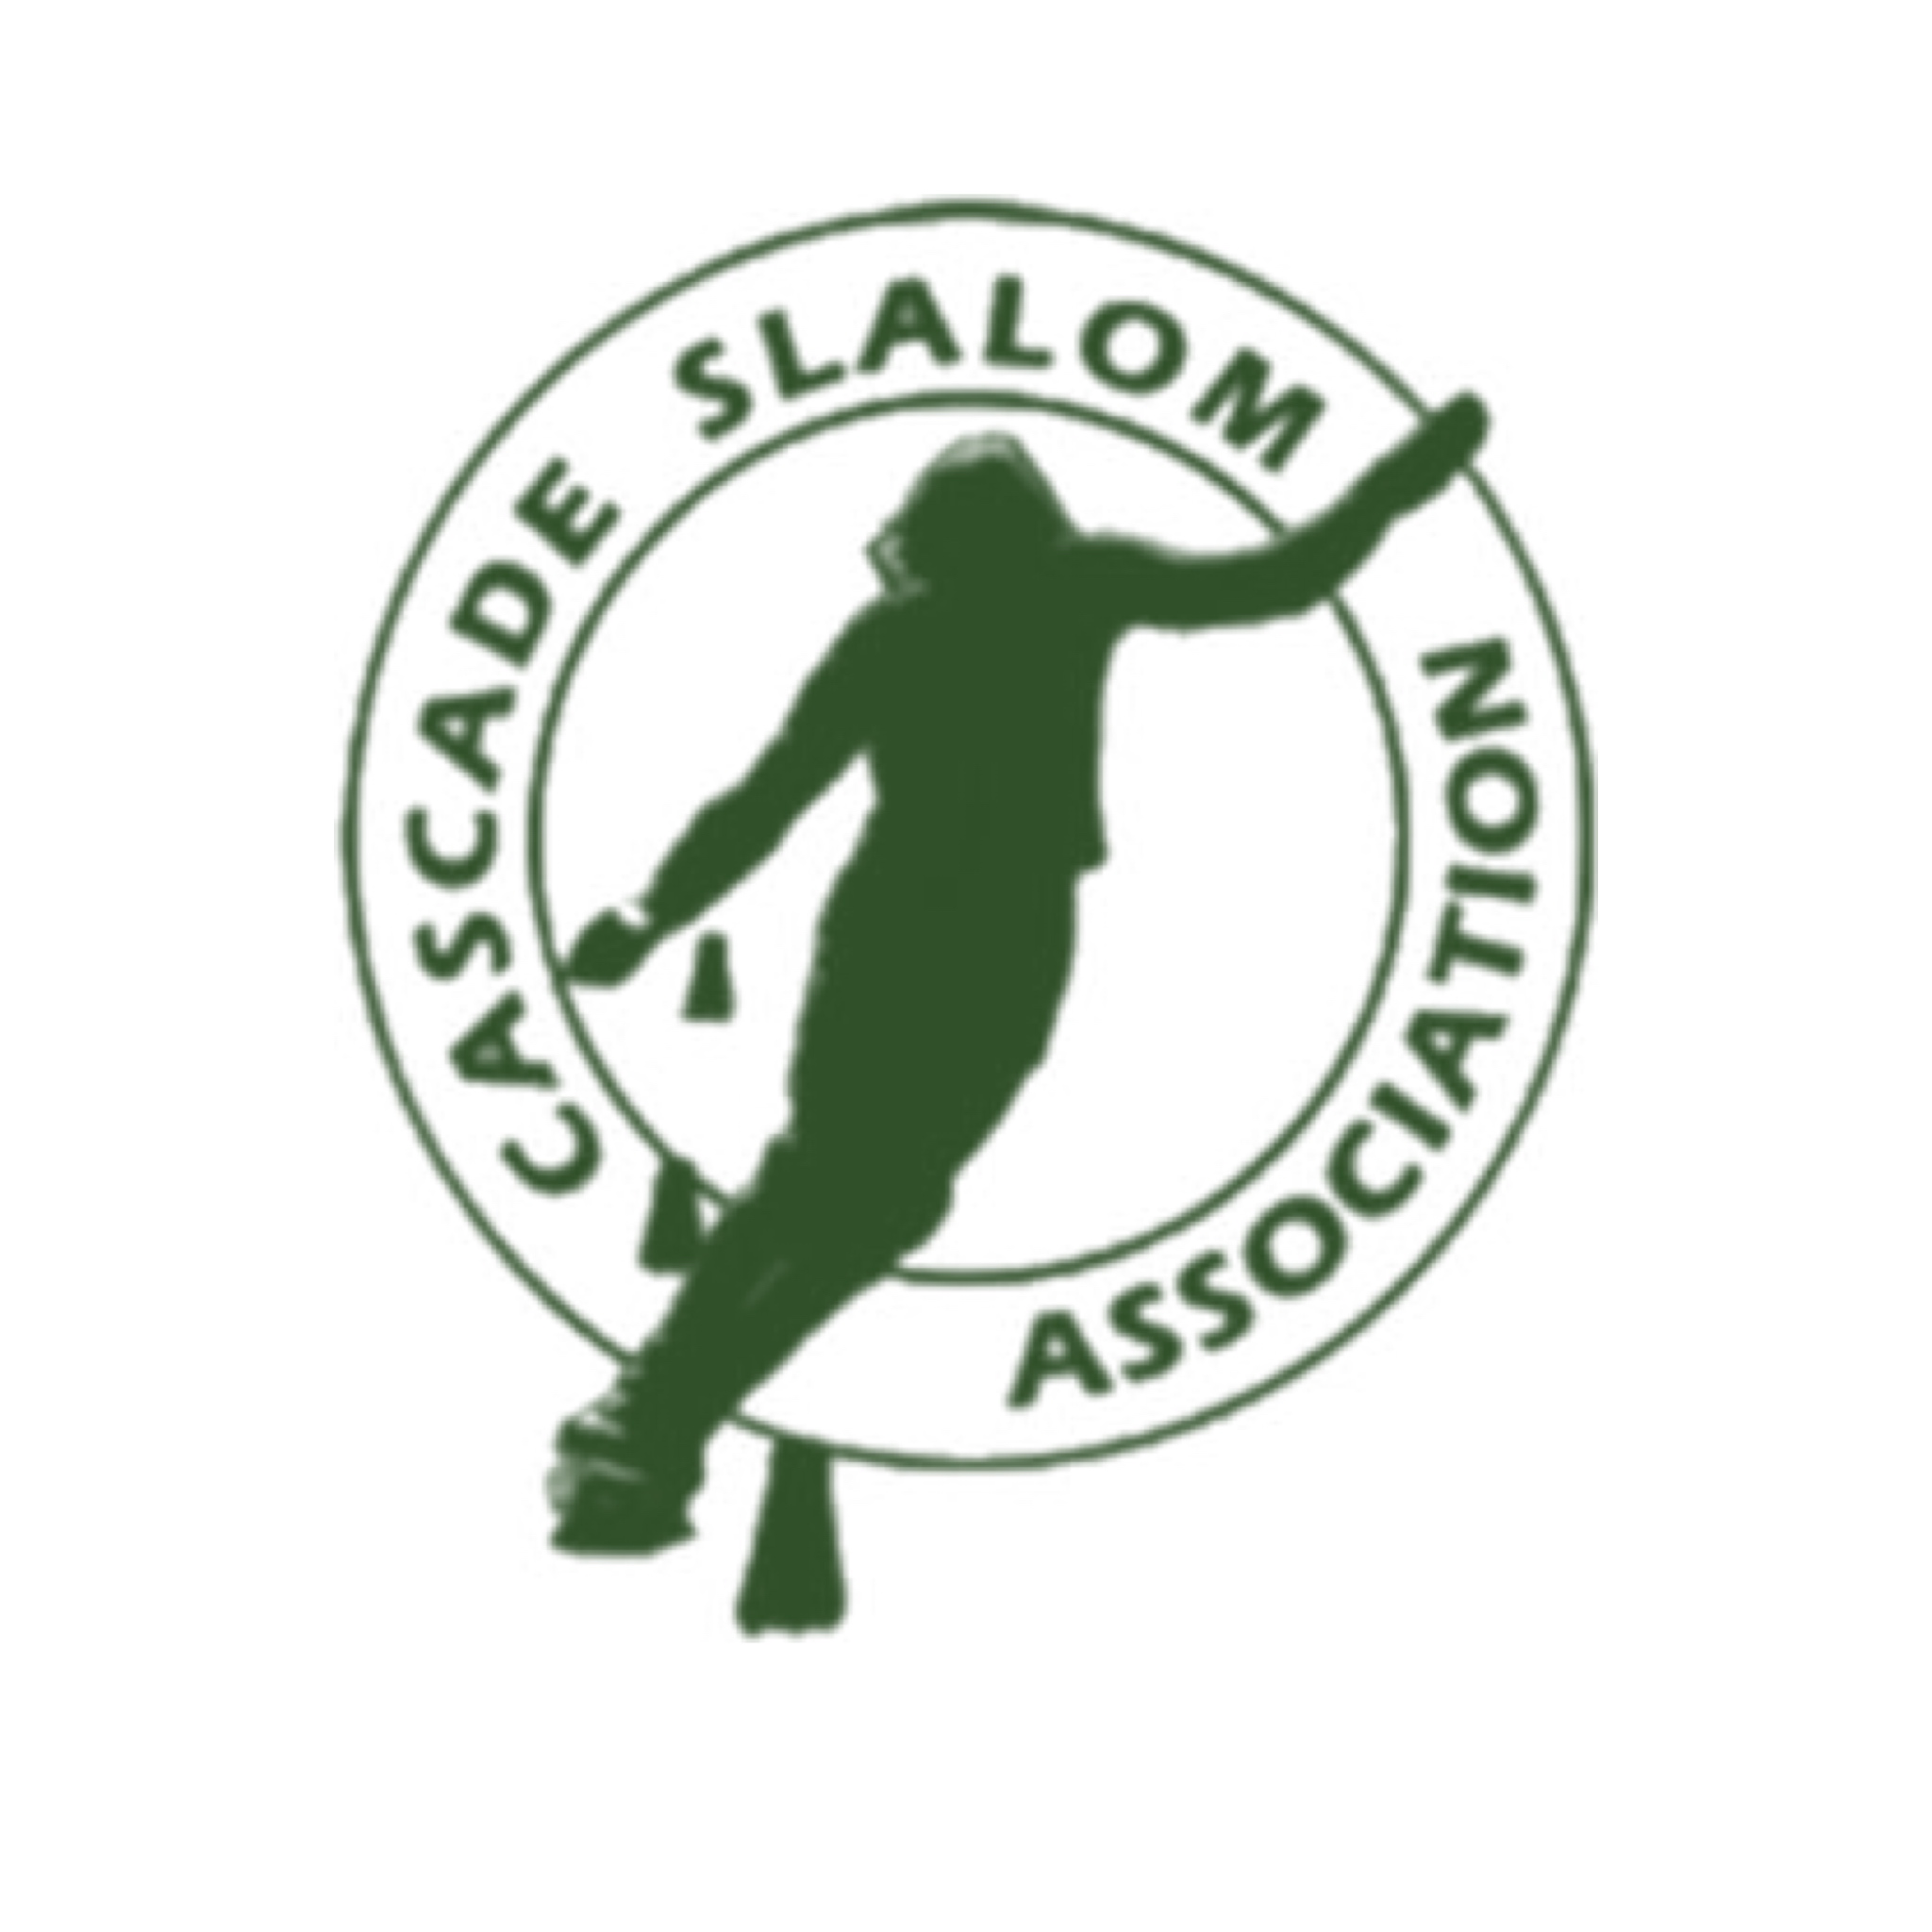 Cascade Slalom Association